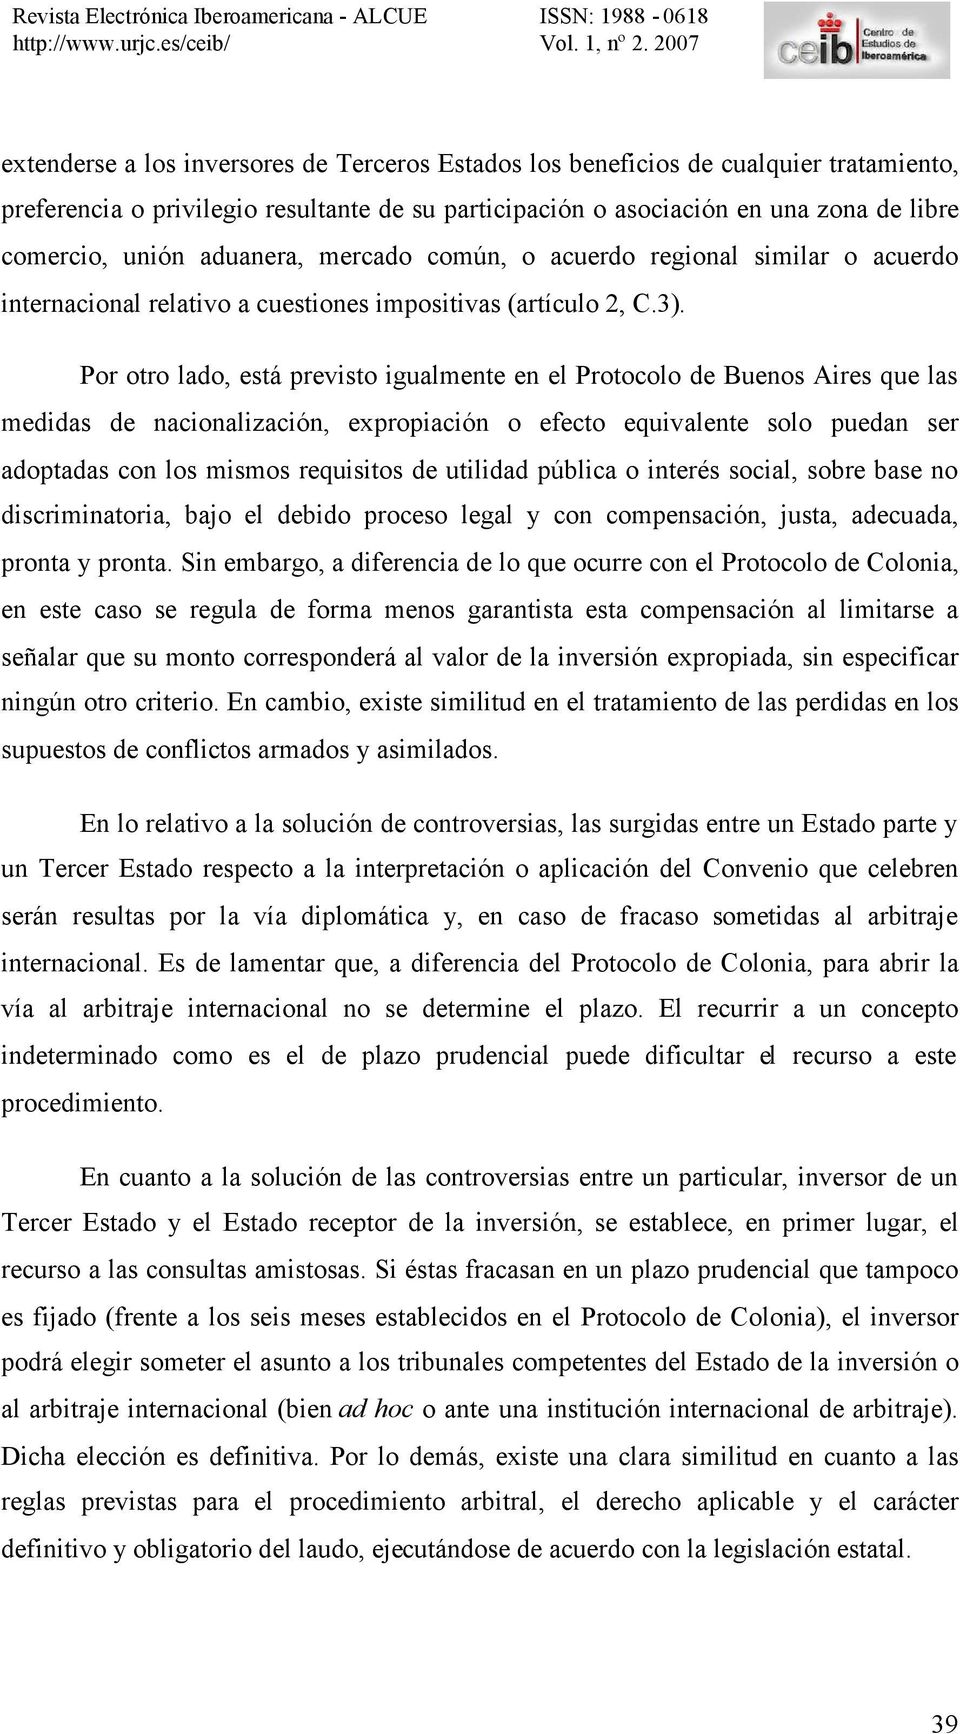 Por otro lado, está previsto igualmente en el Protocolo de Buenos Aires que las medidas de nacionalización, expropiación o efecto equivalente solo puedan ser adoptadas con los mismos requisitos de